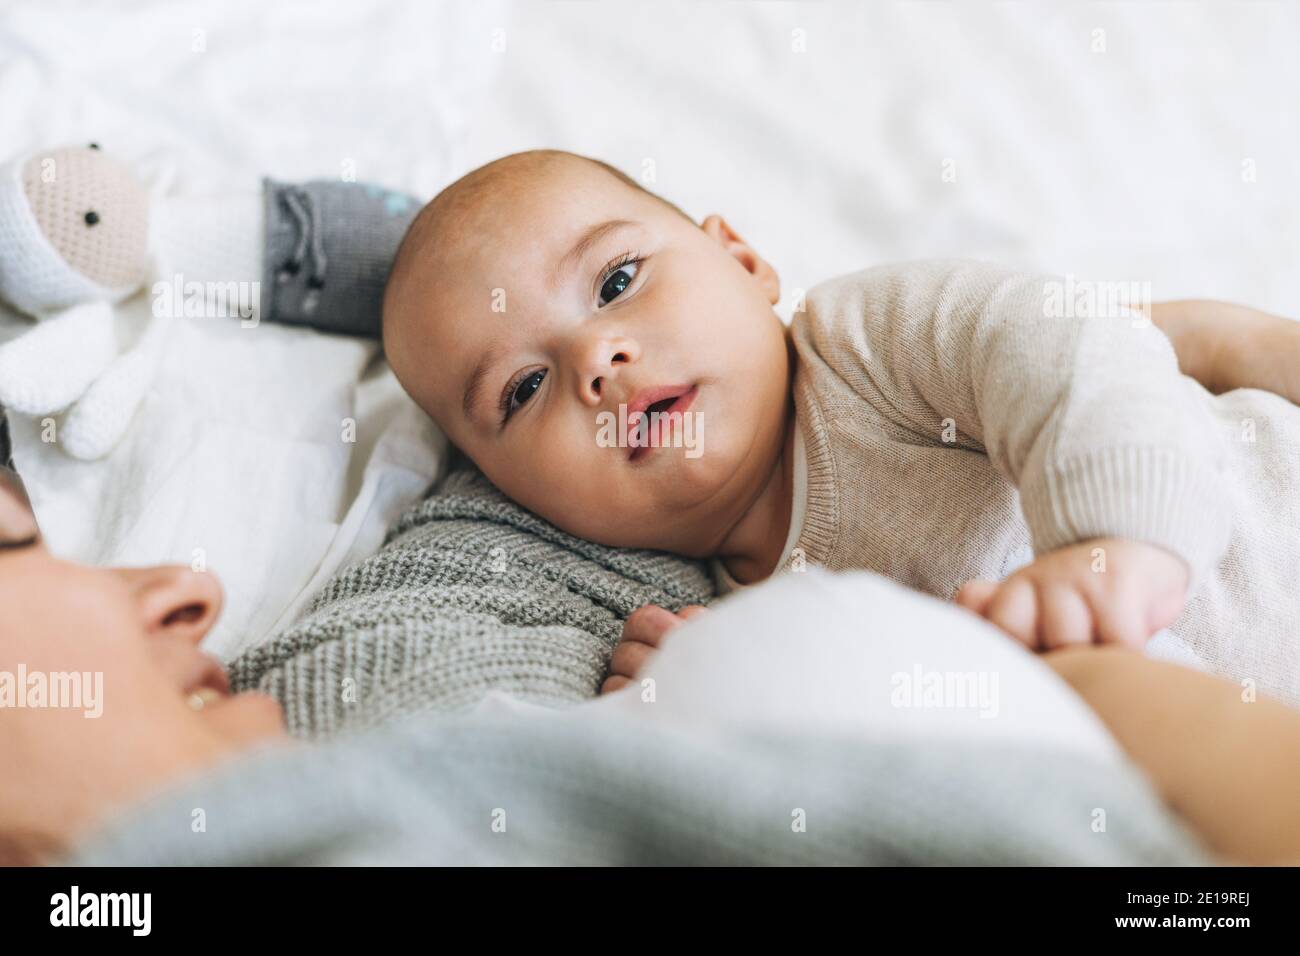 Junge Mutter mit niedlichen Baby junge, Mutter Brust füttert Baby auf dem Bett, natürliche Töne Stockfoto